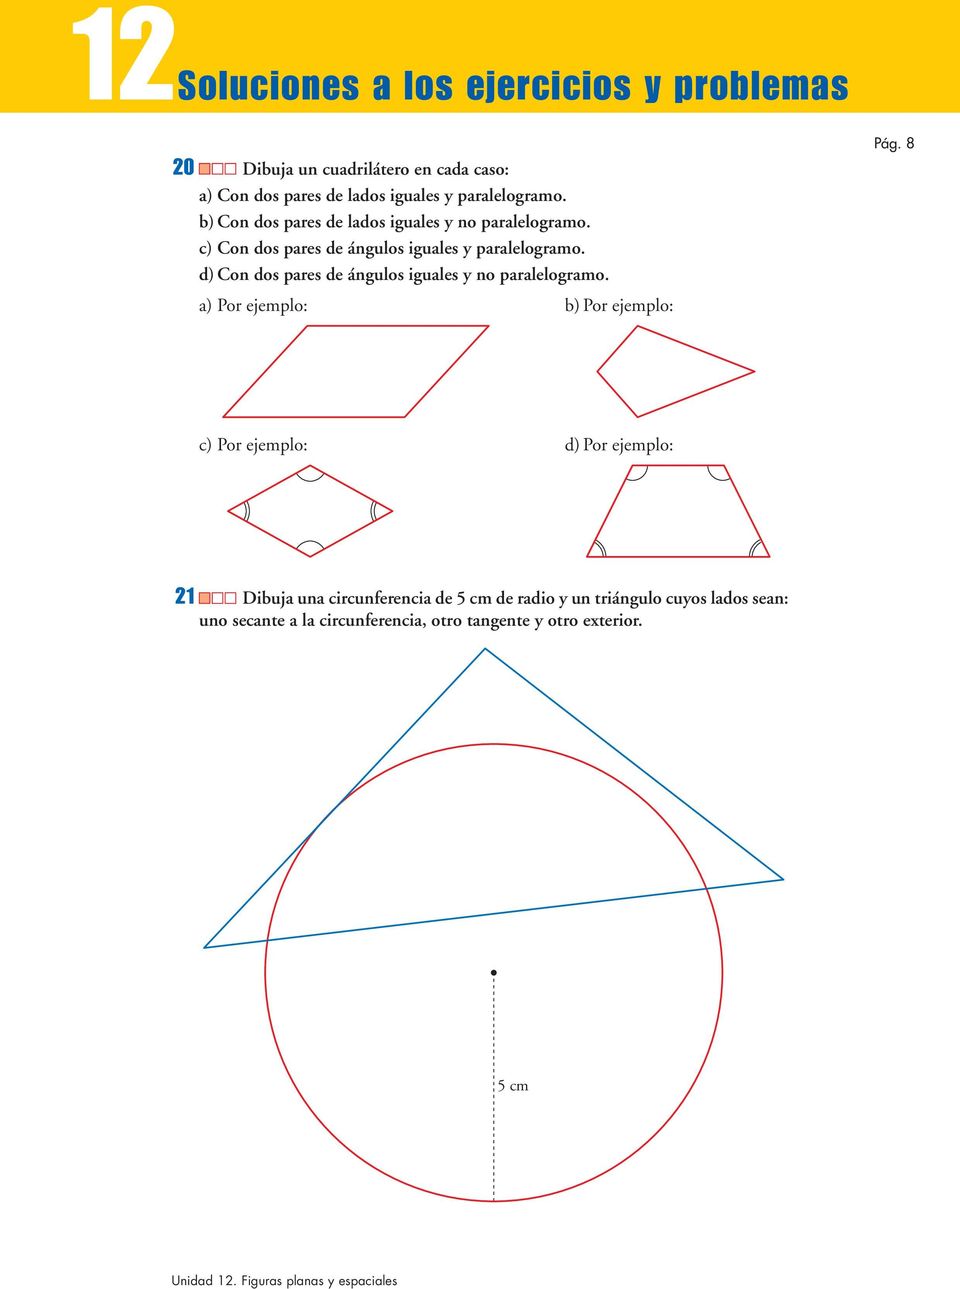 d) Con dos pares de ángulos iguales y no paralelogramo. a) Por ejemplo: b) Por ejemplo: Pág.